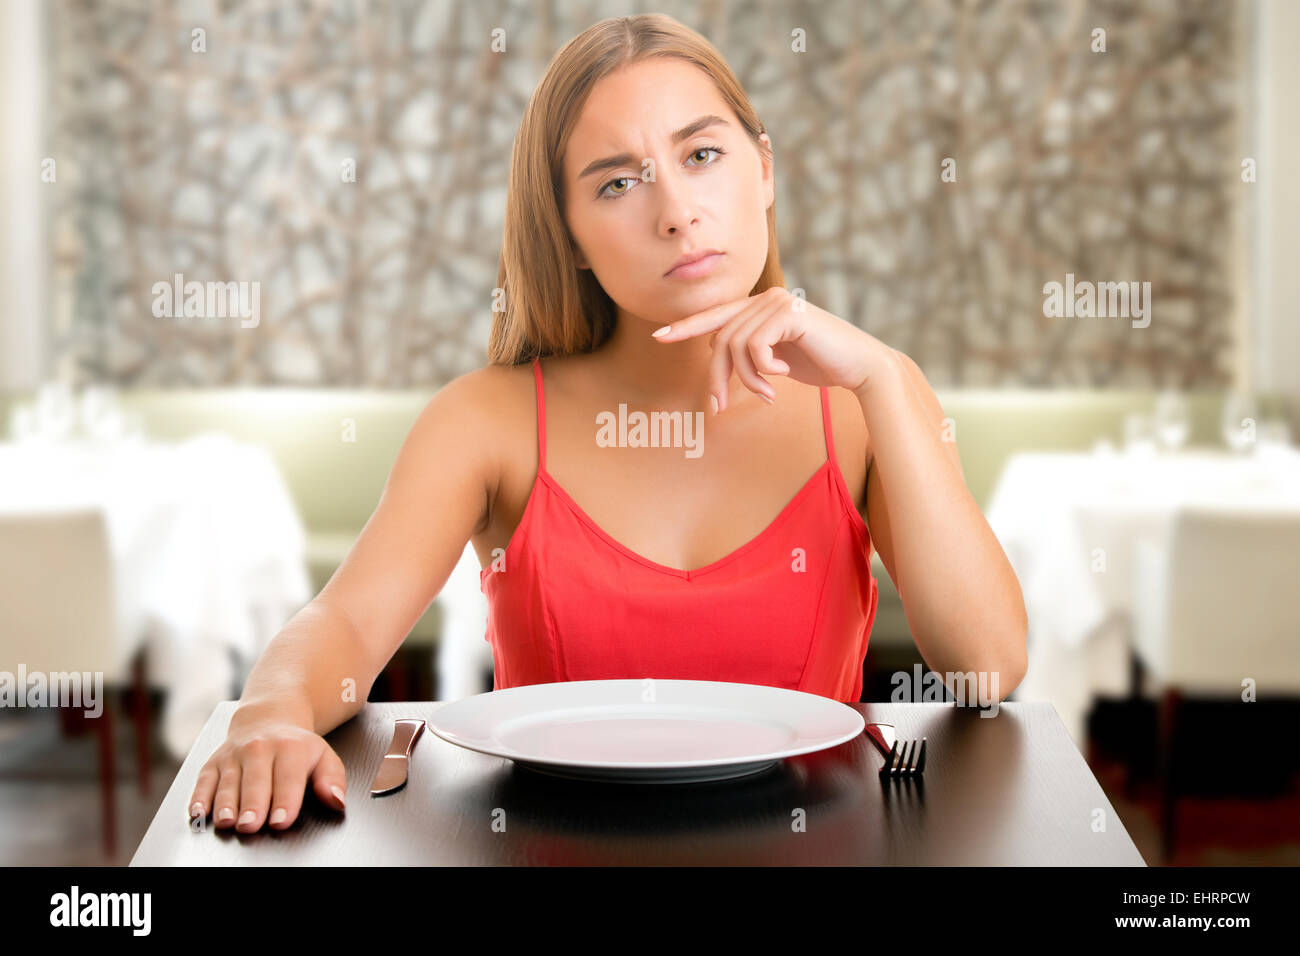 Femme affamé sur un régime alimentaire avec une plaque d'attente vide dans un restaurant Banque D'Images